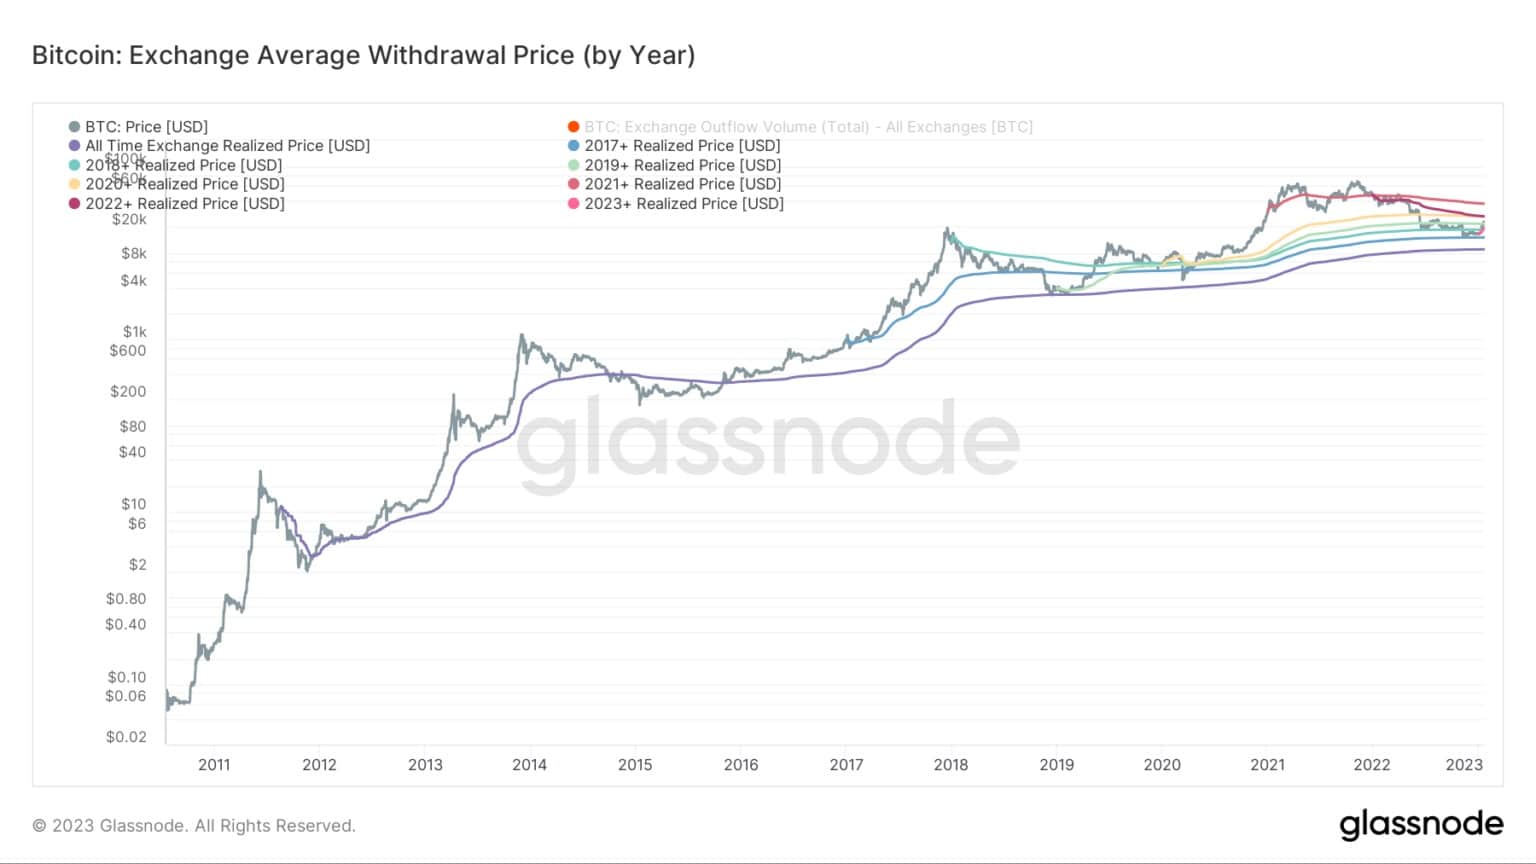 Graf zobrazující průměrnou cenu výběru na burze pro Bitcoin v jednotlivých letech (Zdroj: Glassnode)